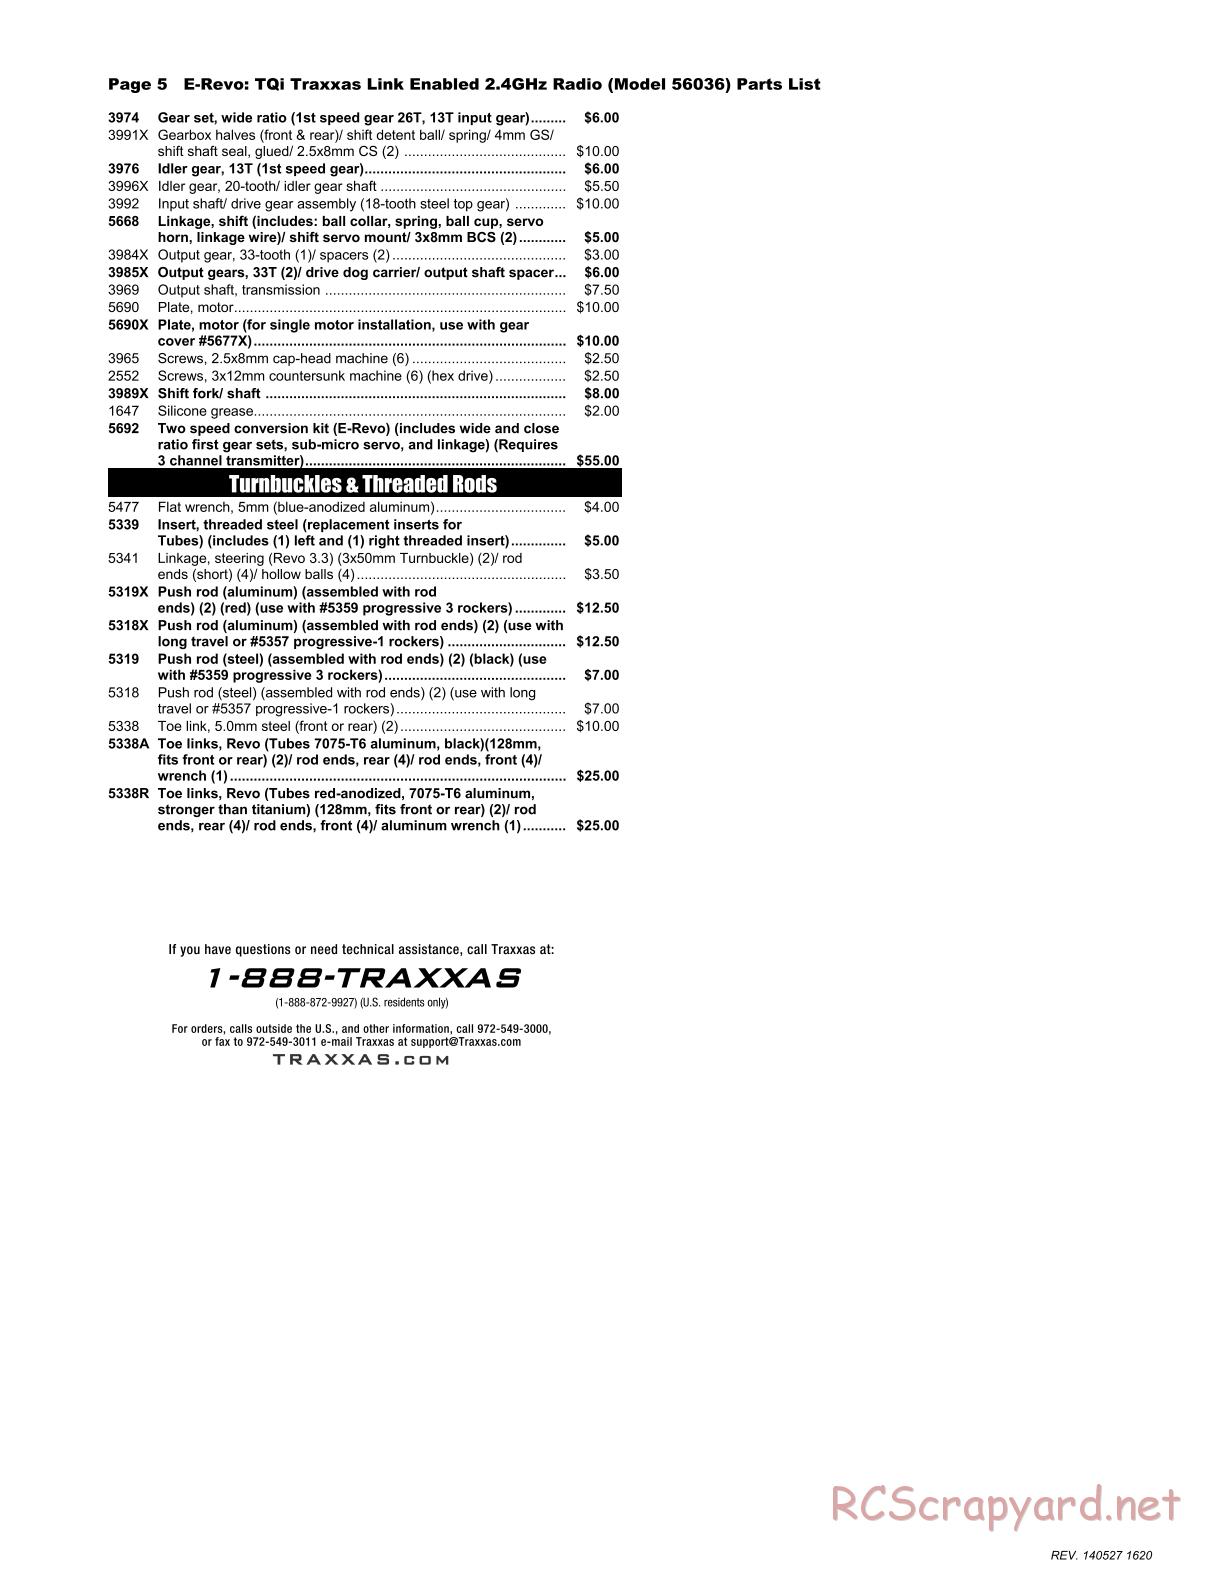 Traxxas - E-Revo (2014) - Parts List - Page 5